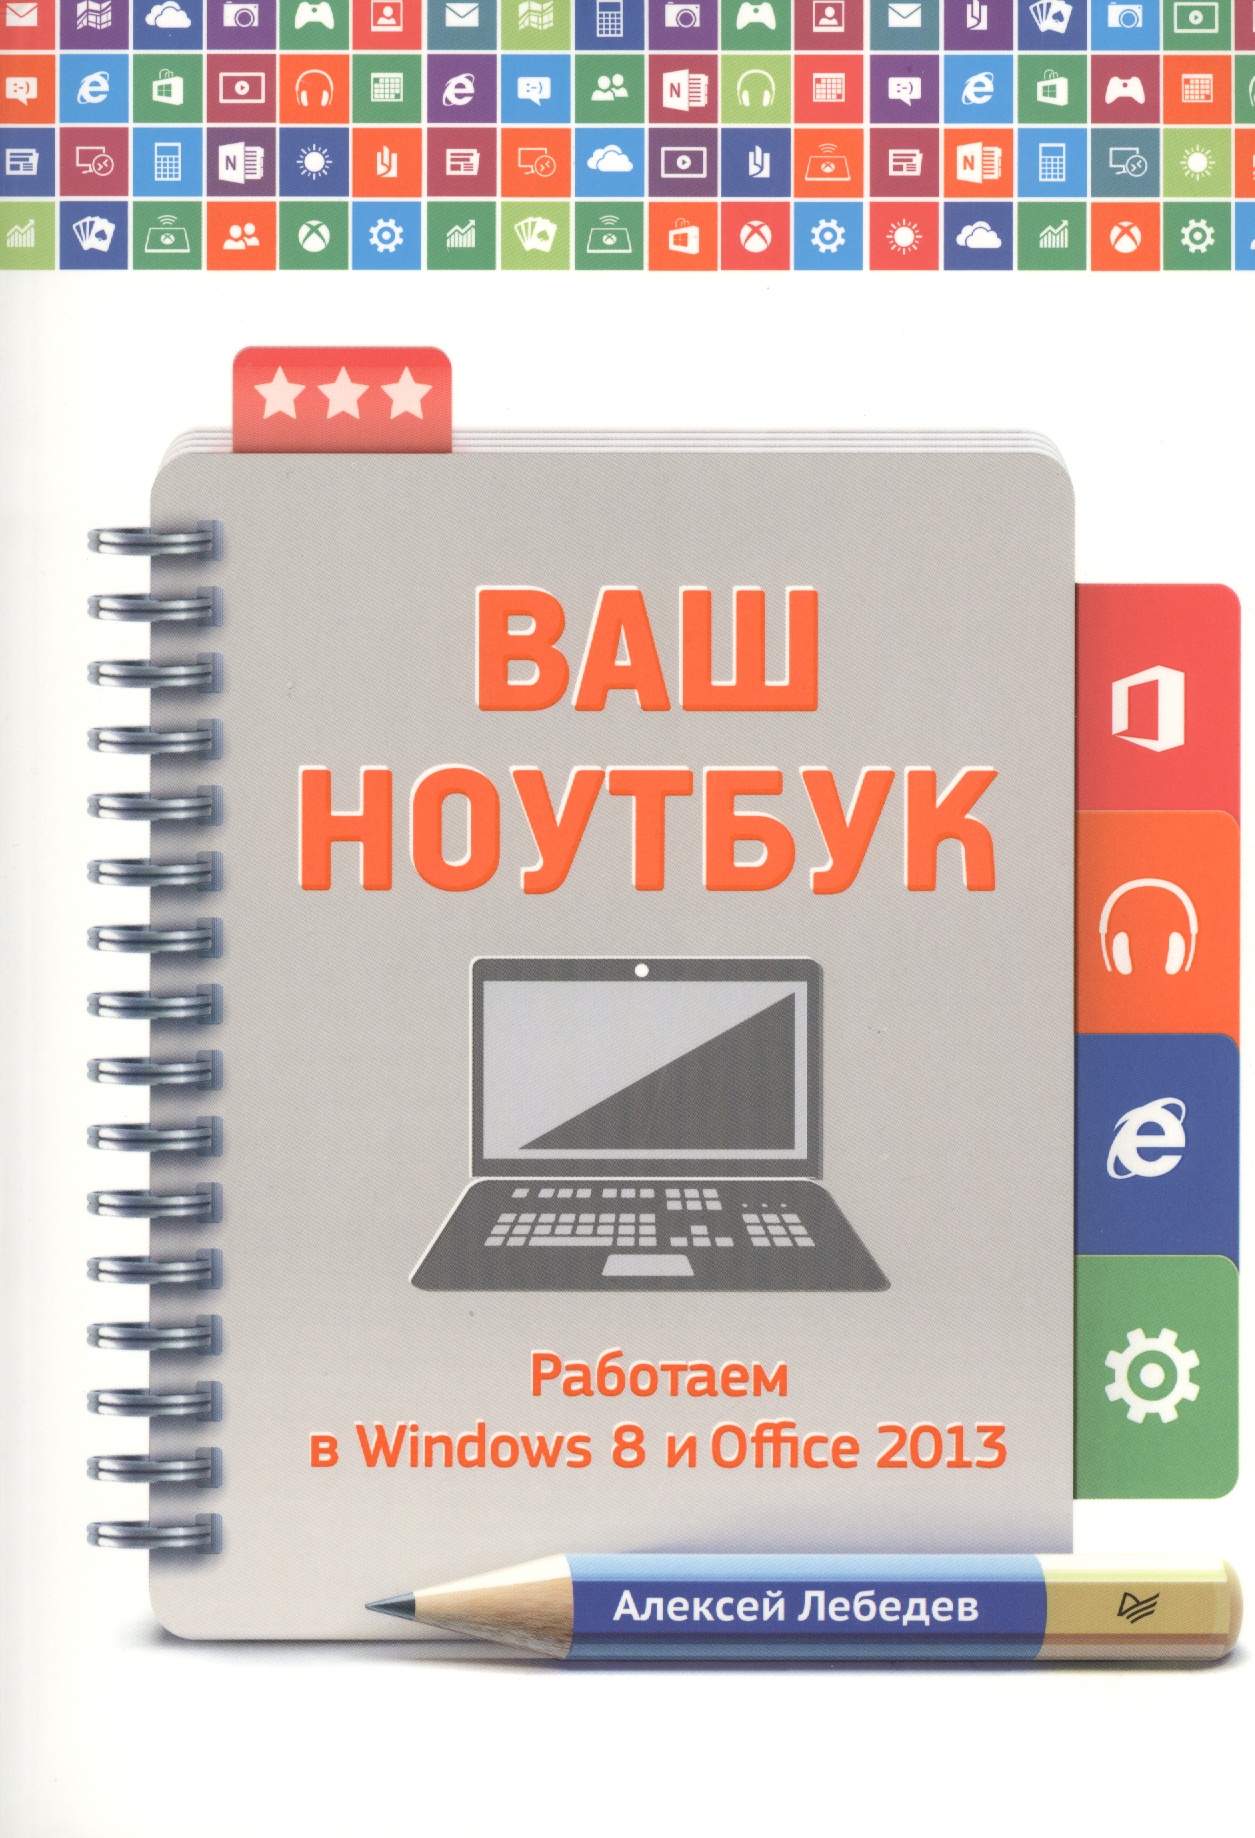 Лебедев Алексей Николаевич - Ваш ноутбук. Работаем в Windows 8 и Office 2013.